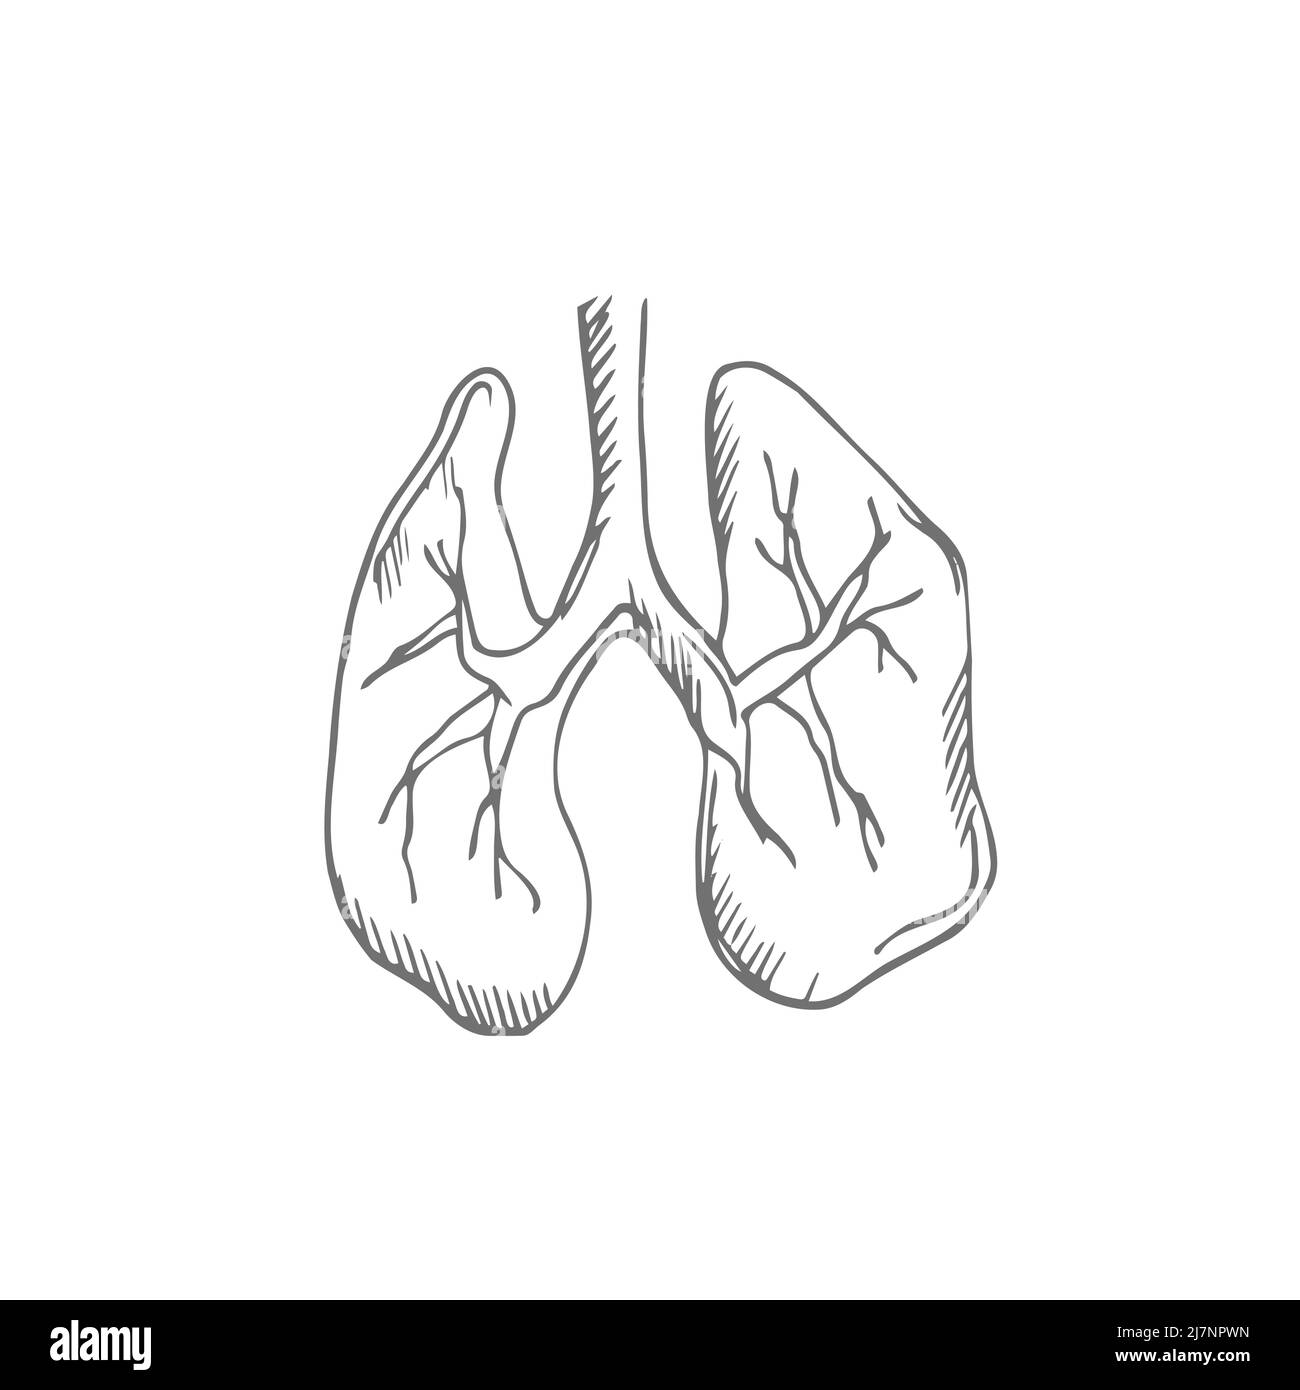 Skizzendarstellung der Lunge. Handgezeichneter Vektor des Atmungssystems. Schwarzer Umriss Doodle Element des menschlichen Organs Stock Vektor